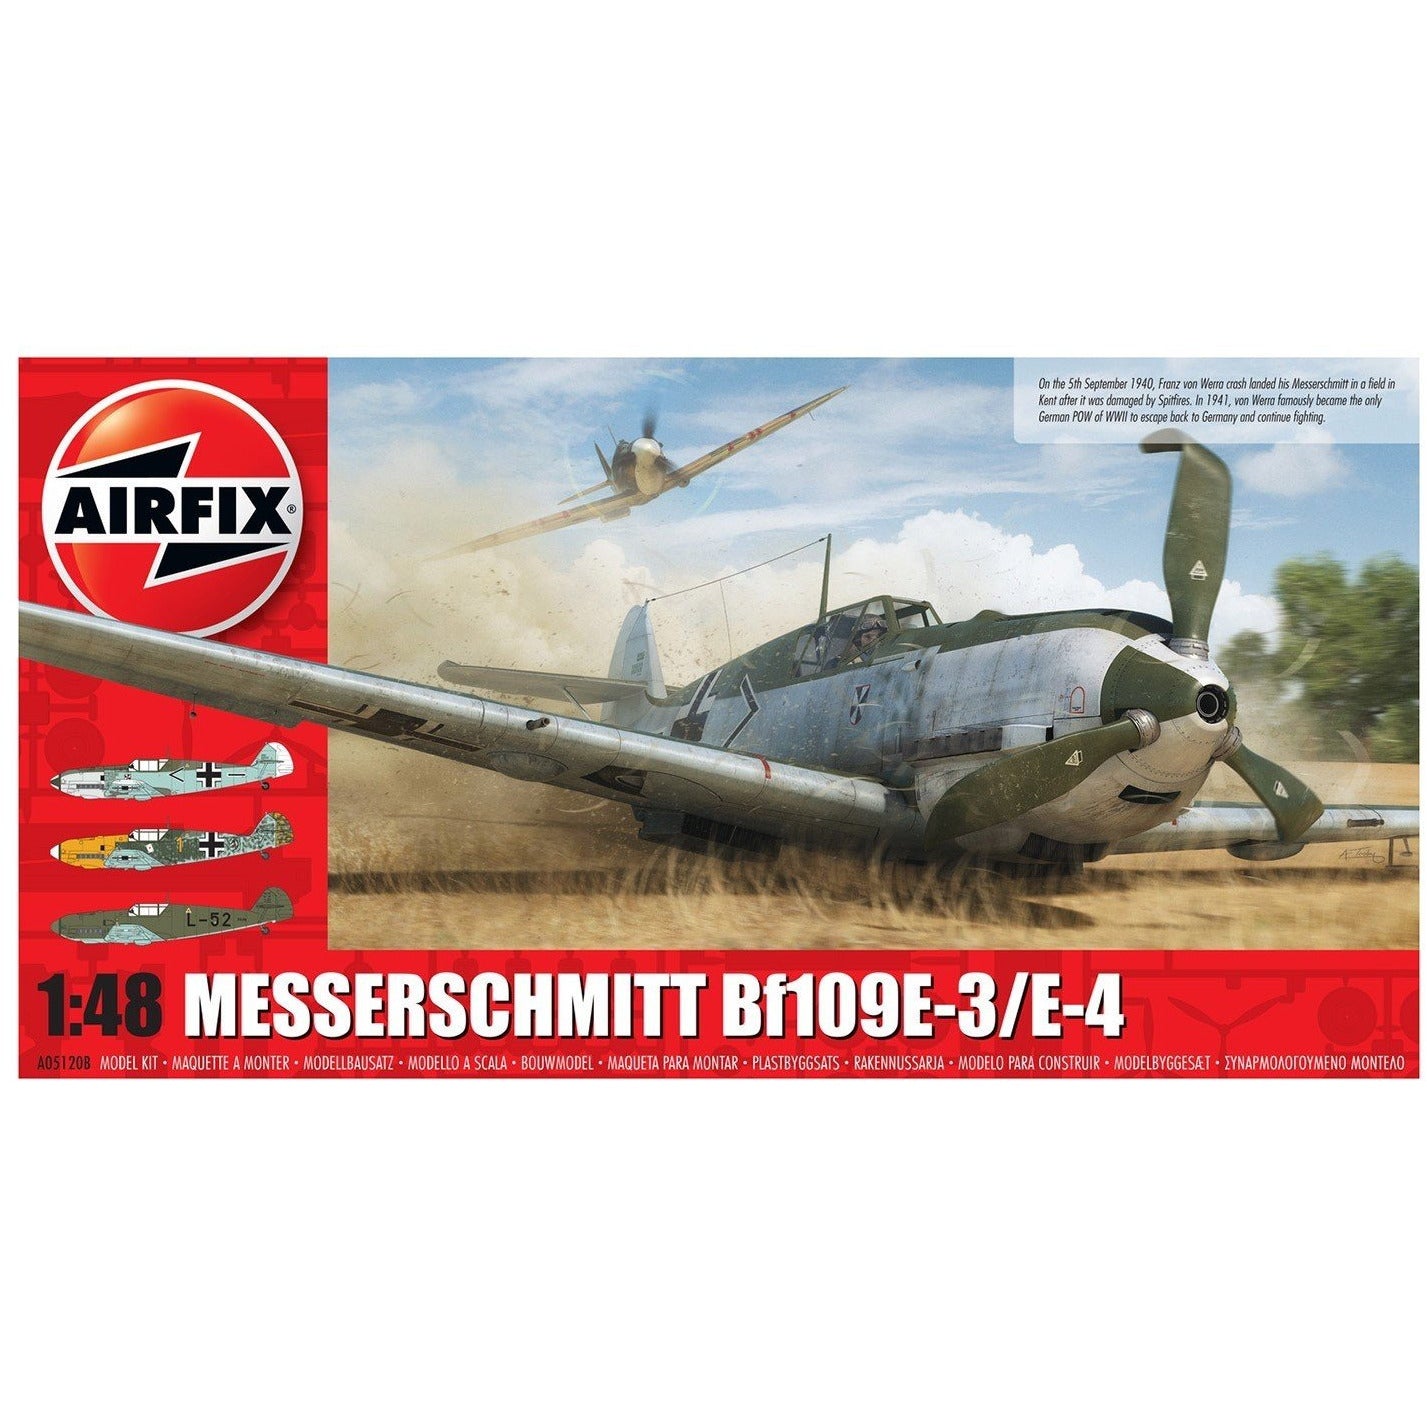 BF-109E Messerschmitt 1/48 by Airfix